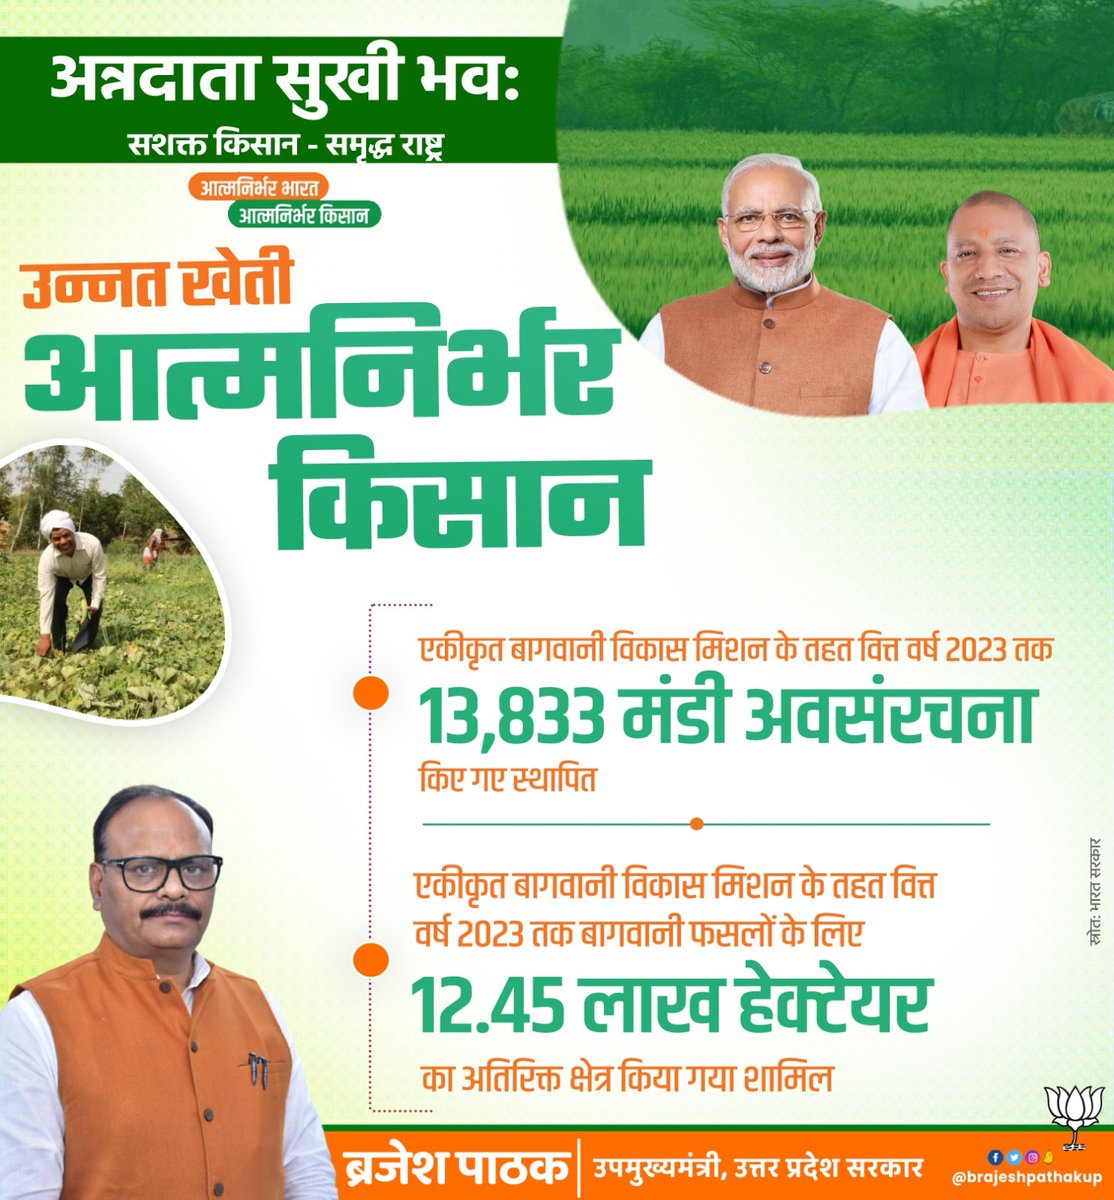 #अन्नदाता_सुखी_भव:
उन्नत खेती, आत्मनिर्भर किसान!
@BJP4India सरकार में कृषि विकास को मिल रही सर्वोच्च प्राथमिकता,एकीकृत बागवानी विकास मिशन के तहत वित्त वर्ष 2023 तक 13,833 मंडी अवसंरचना किए गए स्थापित।
#GoodGovernance #atmanirbharkisan 
@PMOIndia @BJP4UP